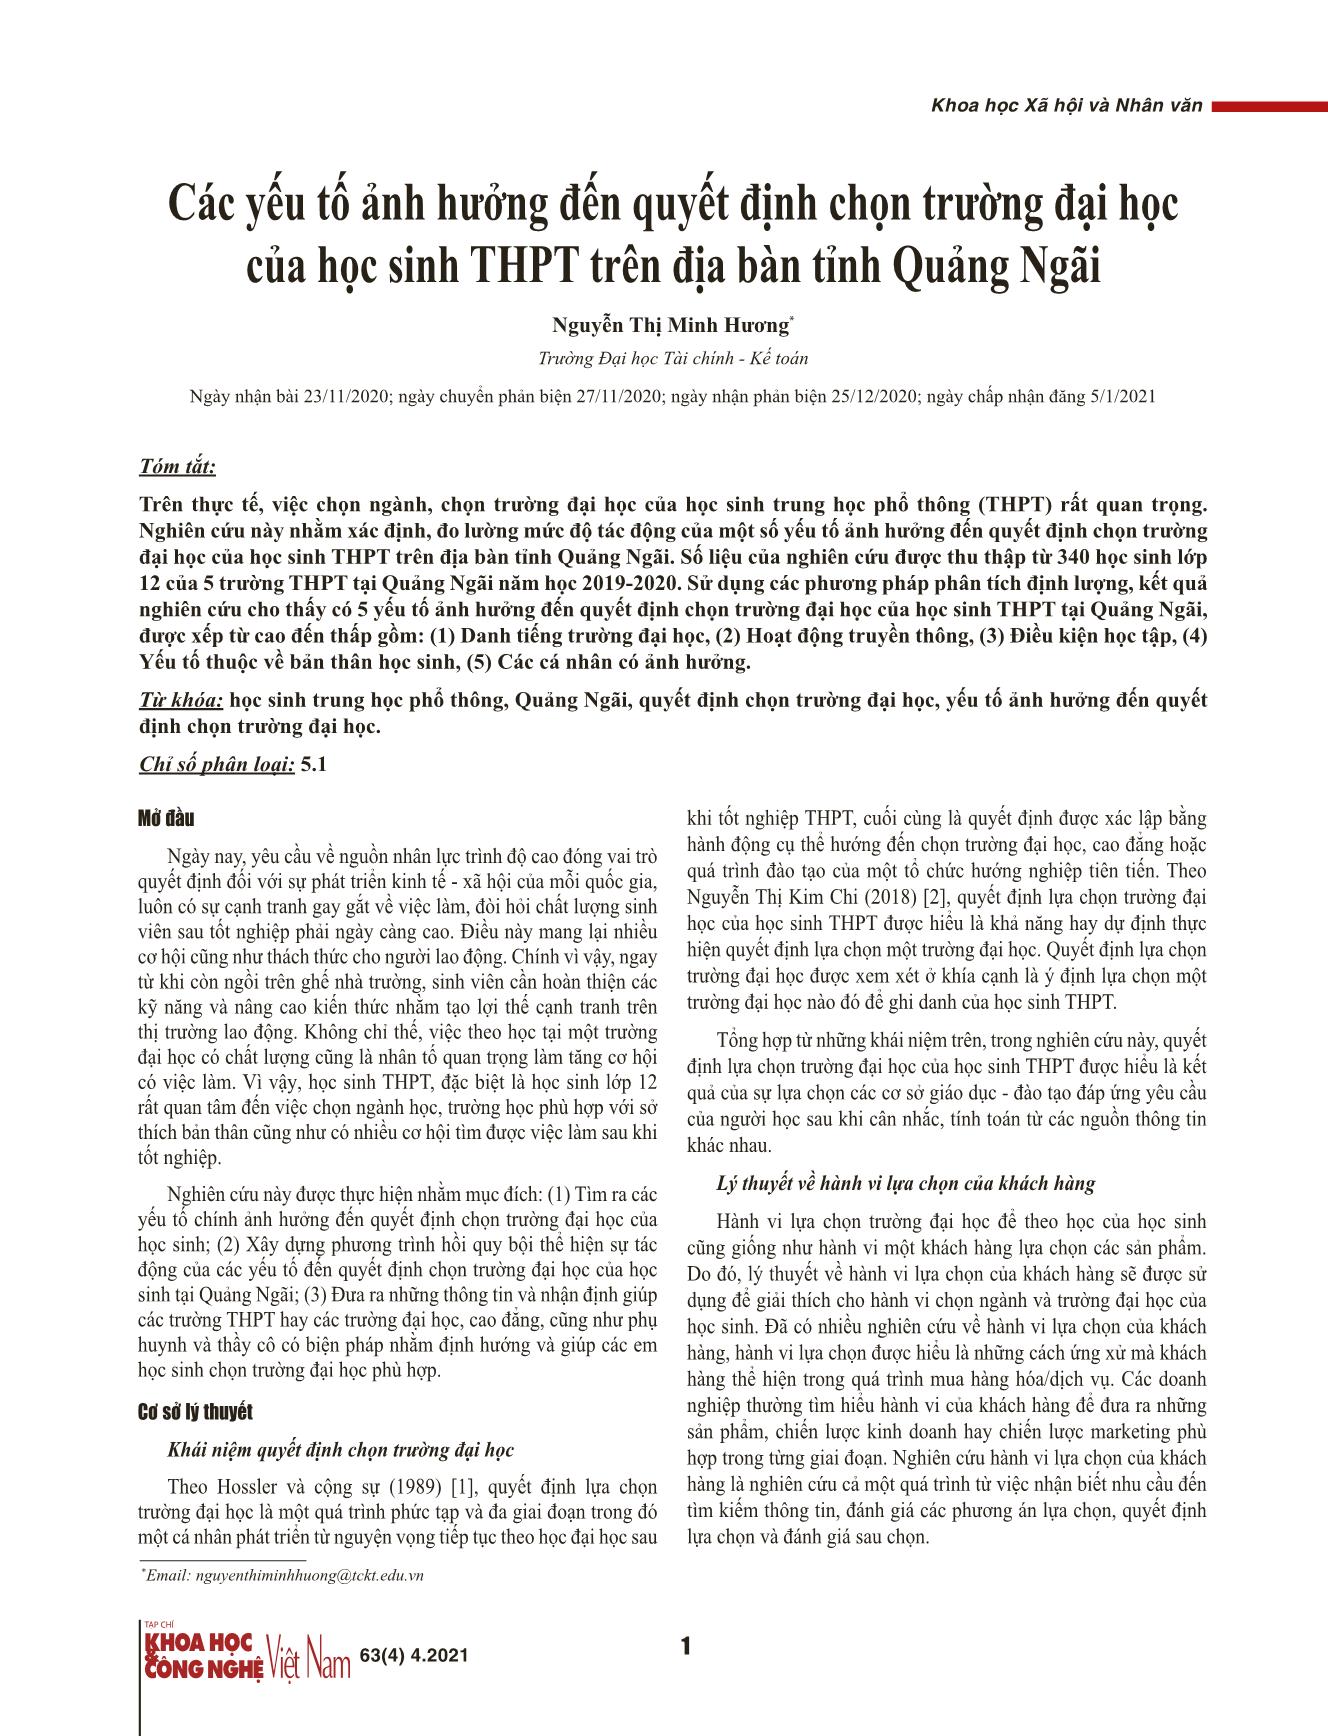 Các yếu tố ảnh hưởng đến quyết định chọn trường đại học của học sinh THPT trên địa bàn tỉnh Quảng Ngãi trang 1